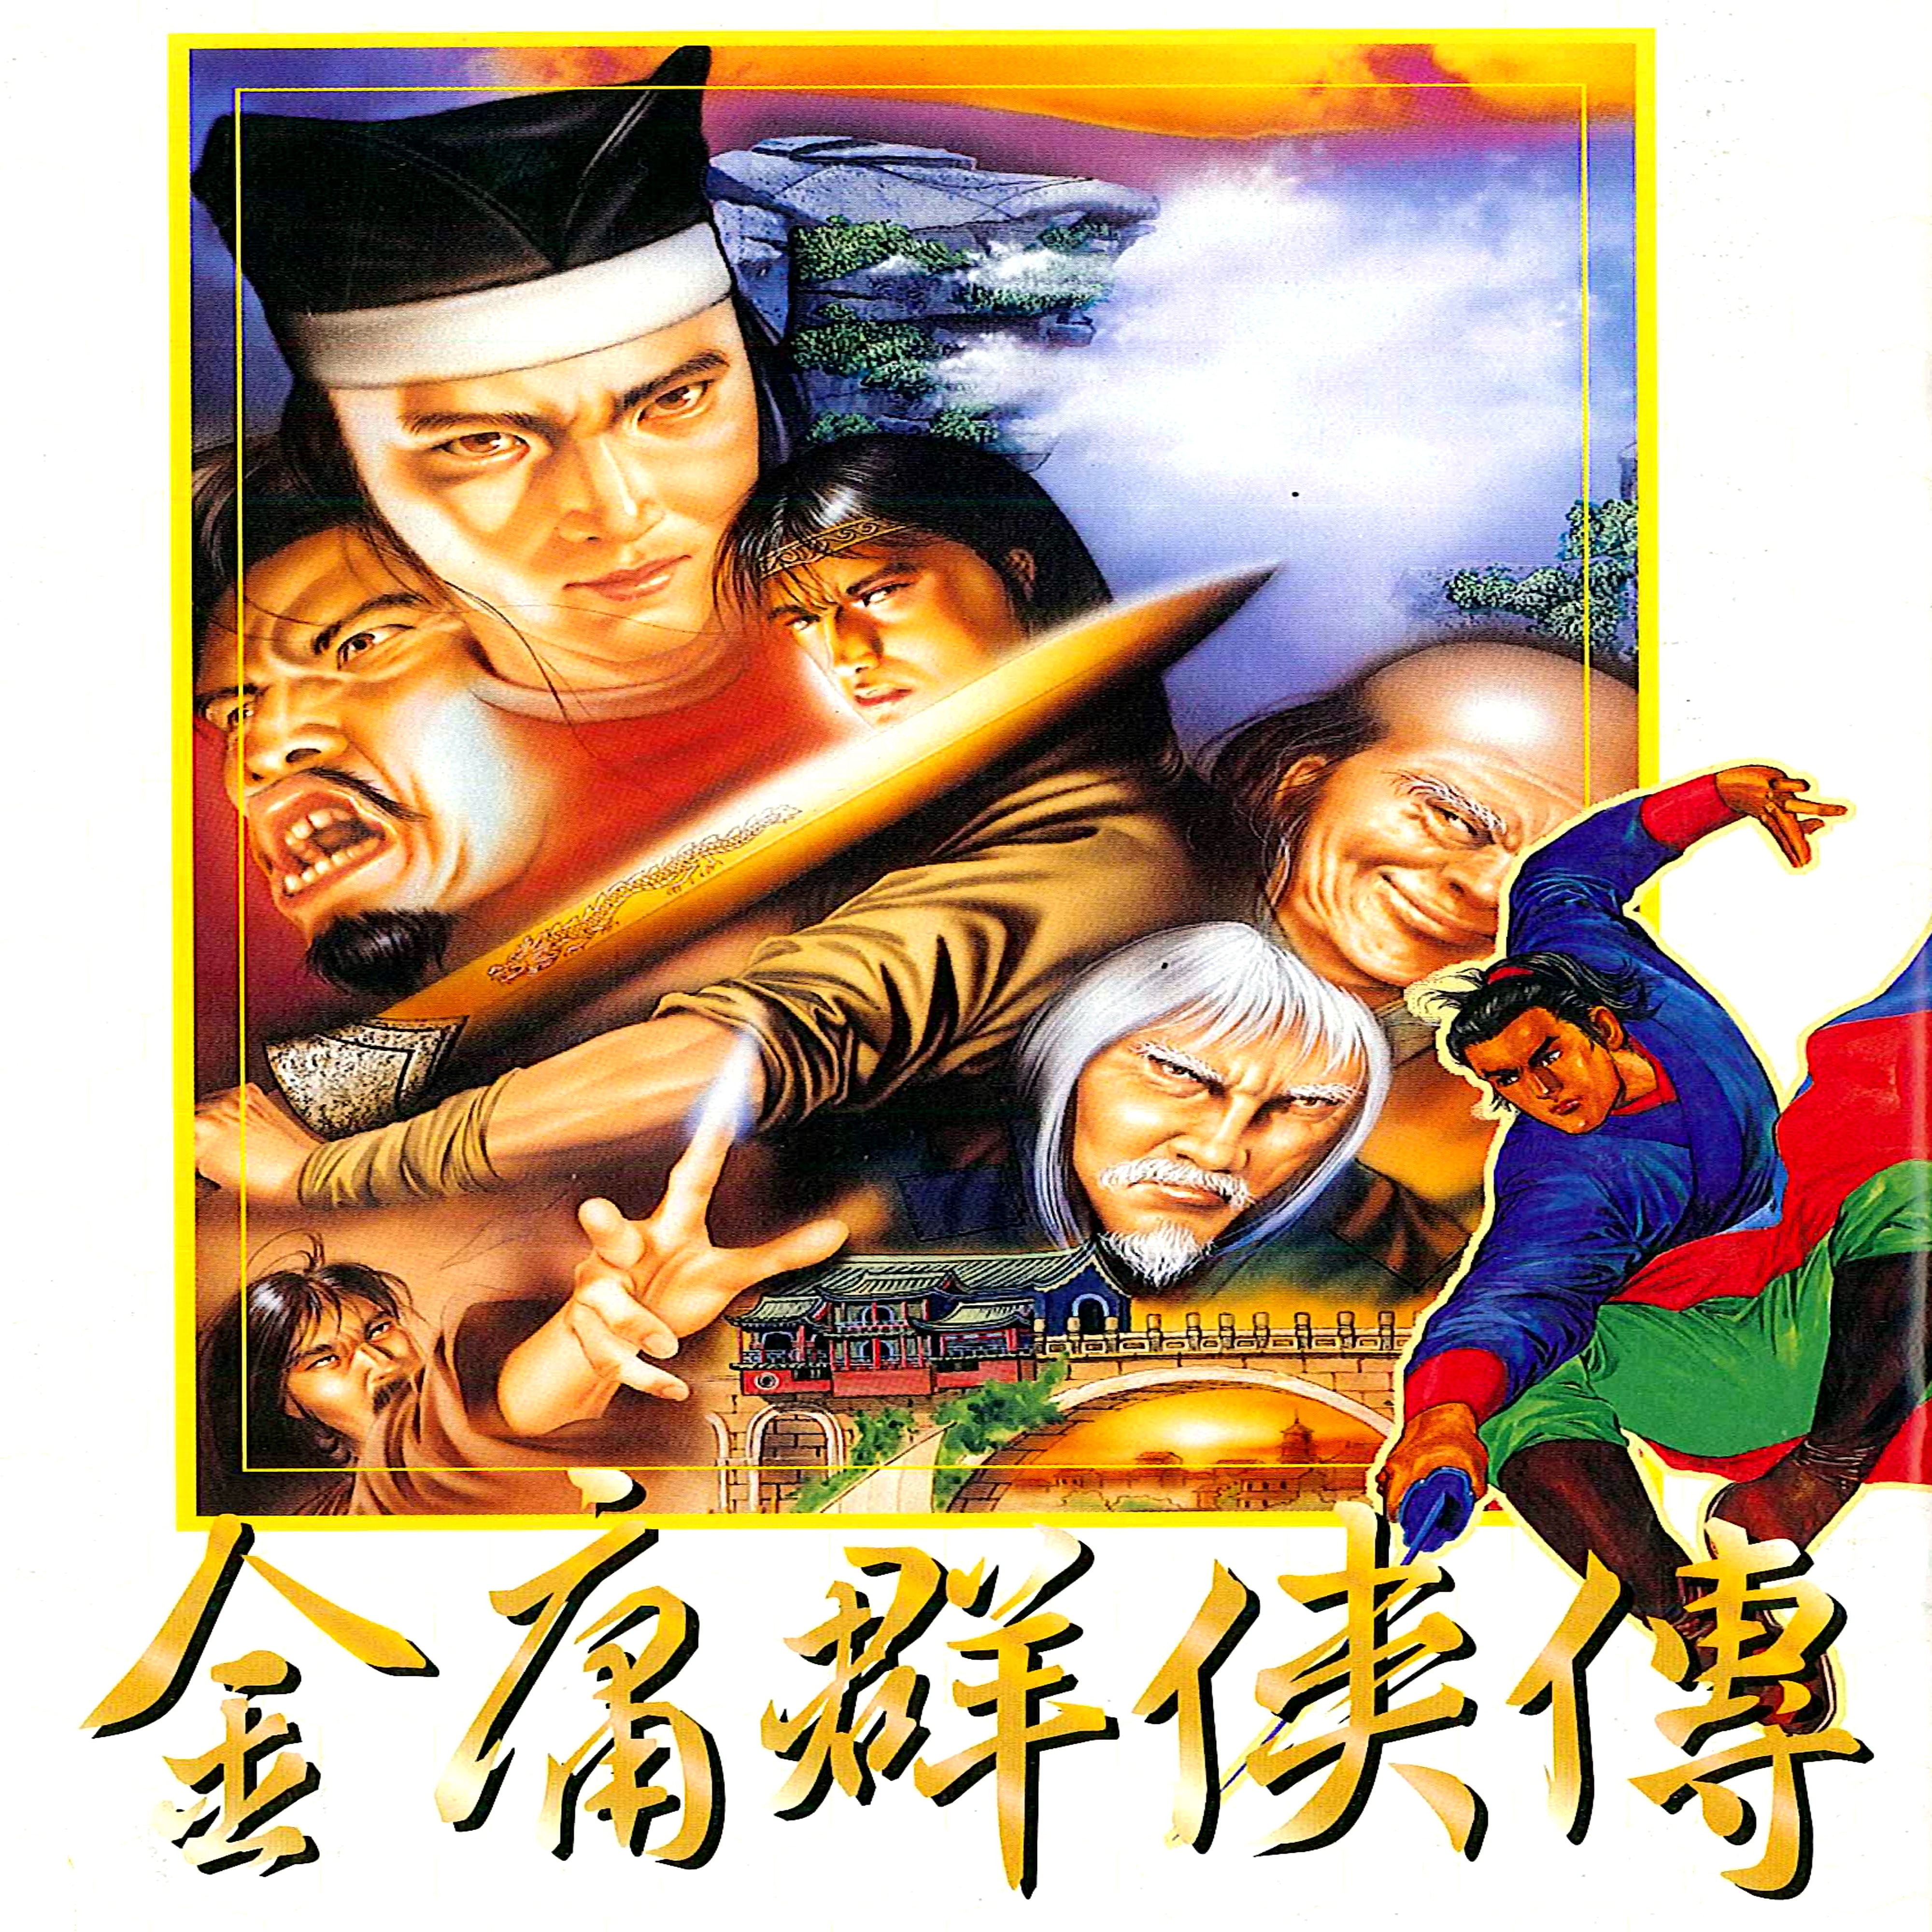 zhi guan chao xuan dian wan pei yue 13 1996 jin yong qun xia chuan